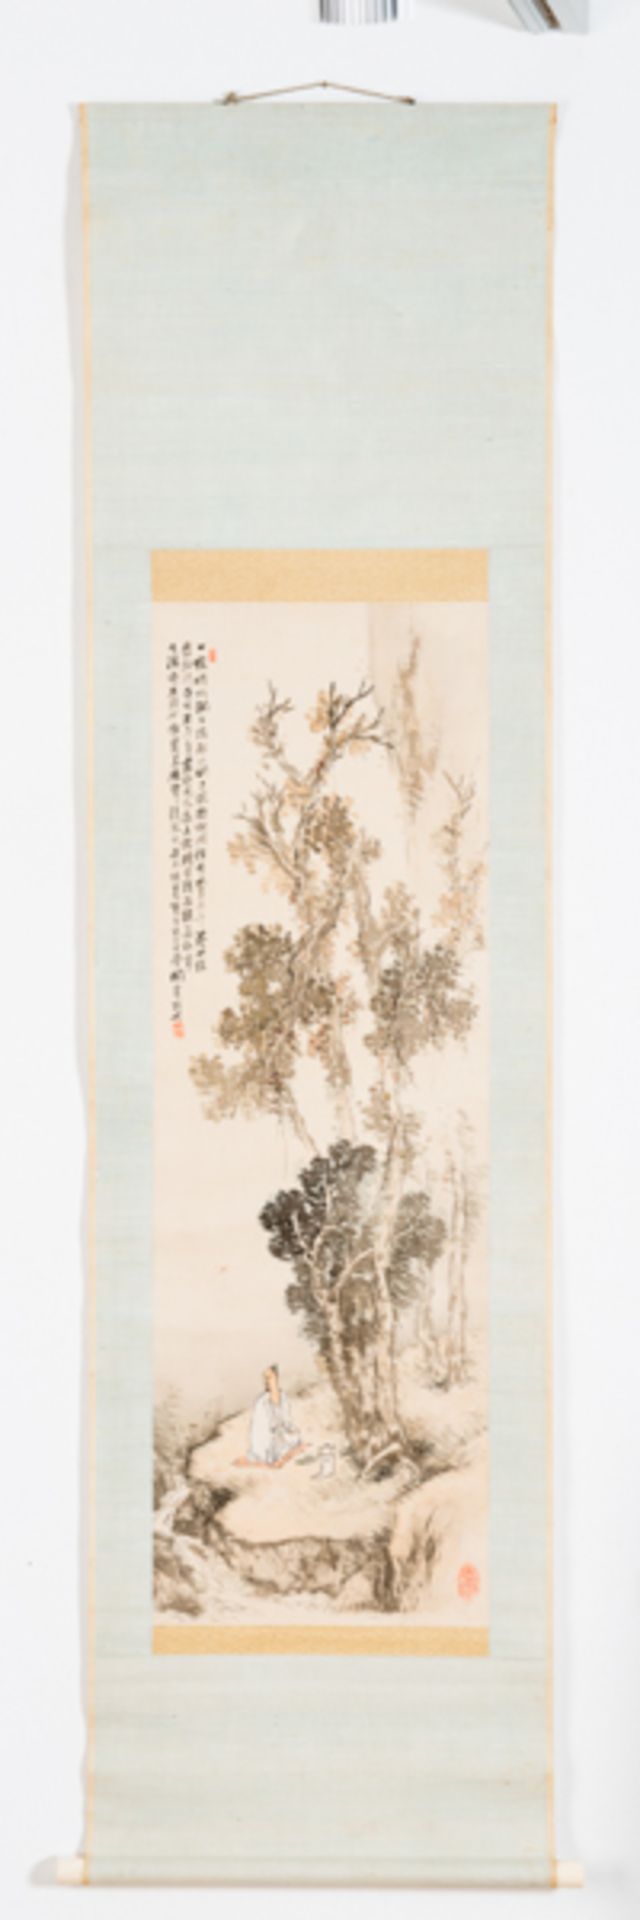 HASHIMOTO KANSETSU (1883-1945): GENIESSER AM BERGBACH
Tusche und Farben auf Papier. Japan, 1. H. 20.